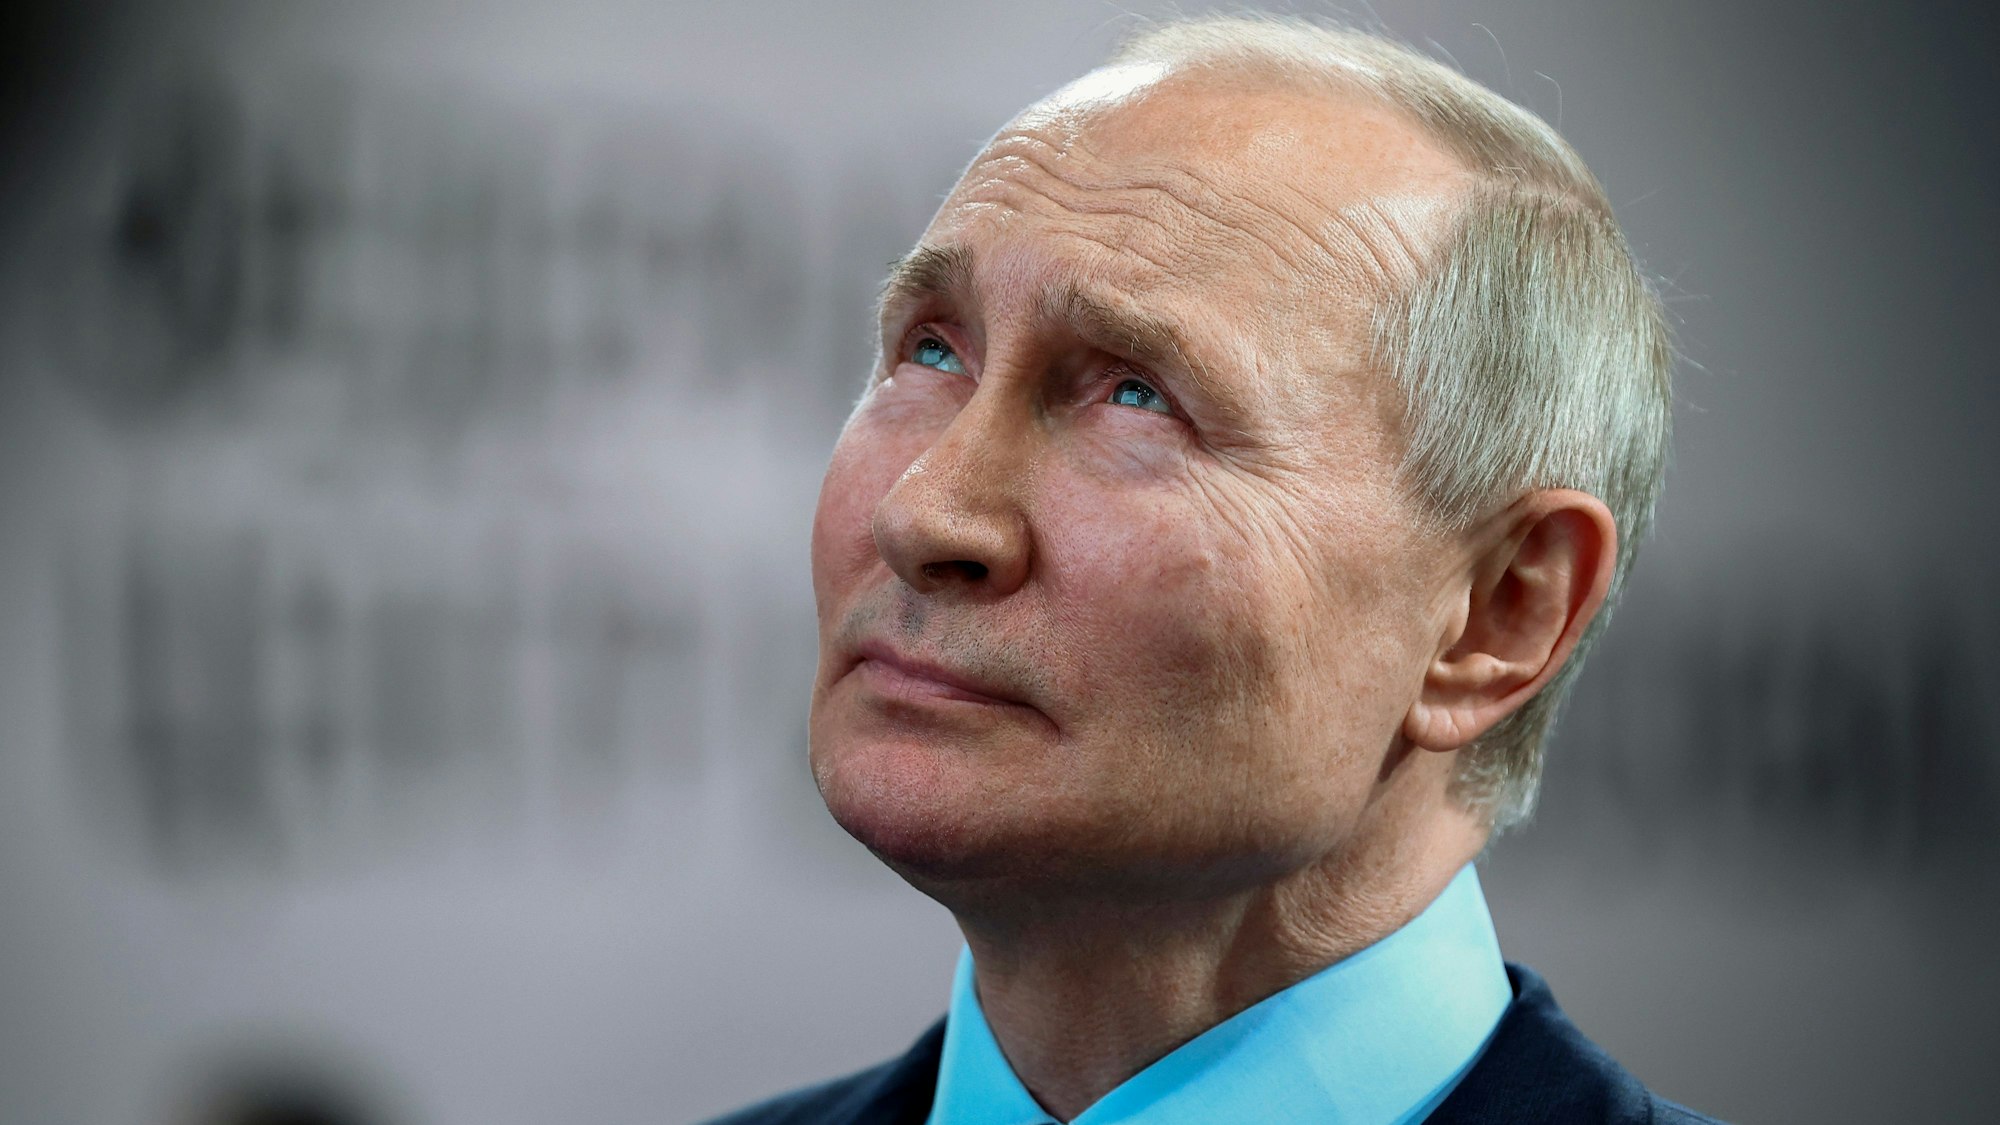 Der russische Präsident Wladimir Putin muss sich immer offene Kritik gefallen lassen. Nun meldete sich auch ein Ex-Minister zu Wort. (Archivbild)